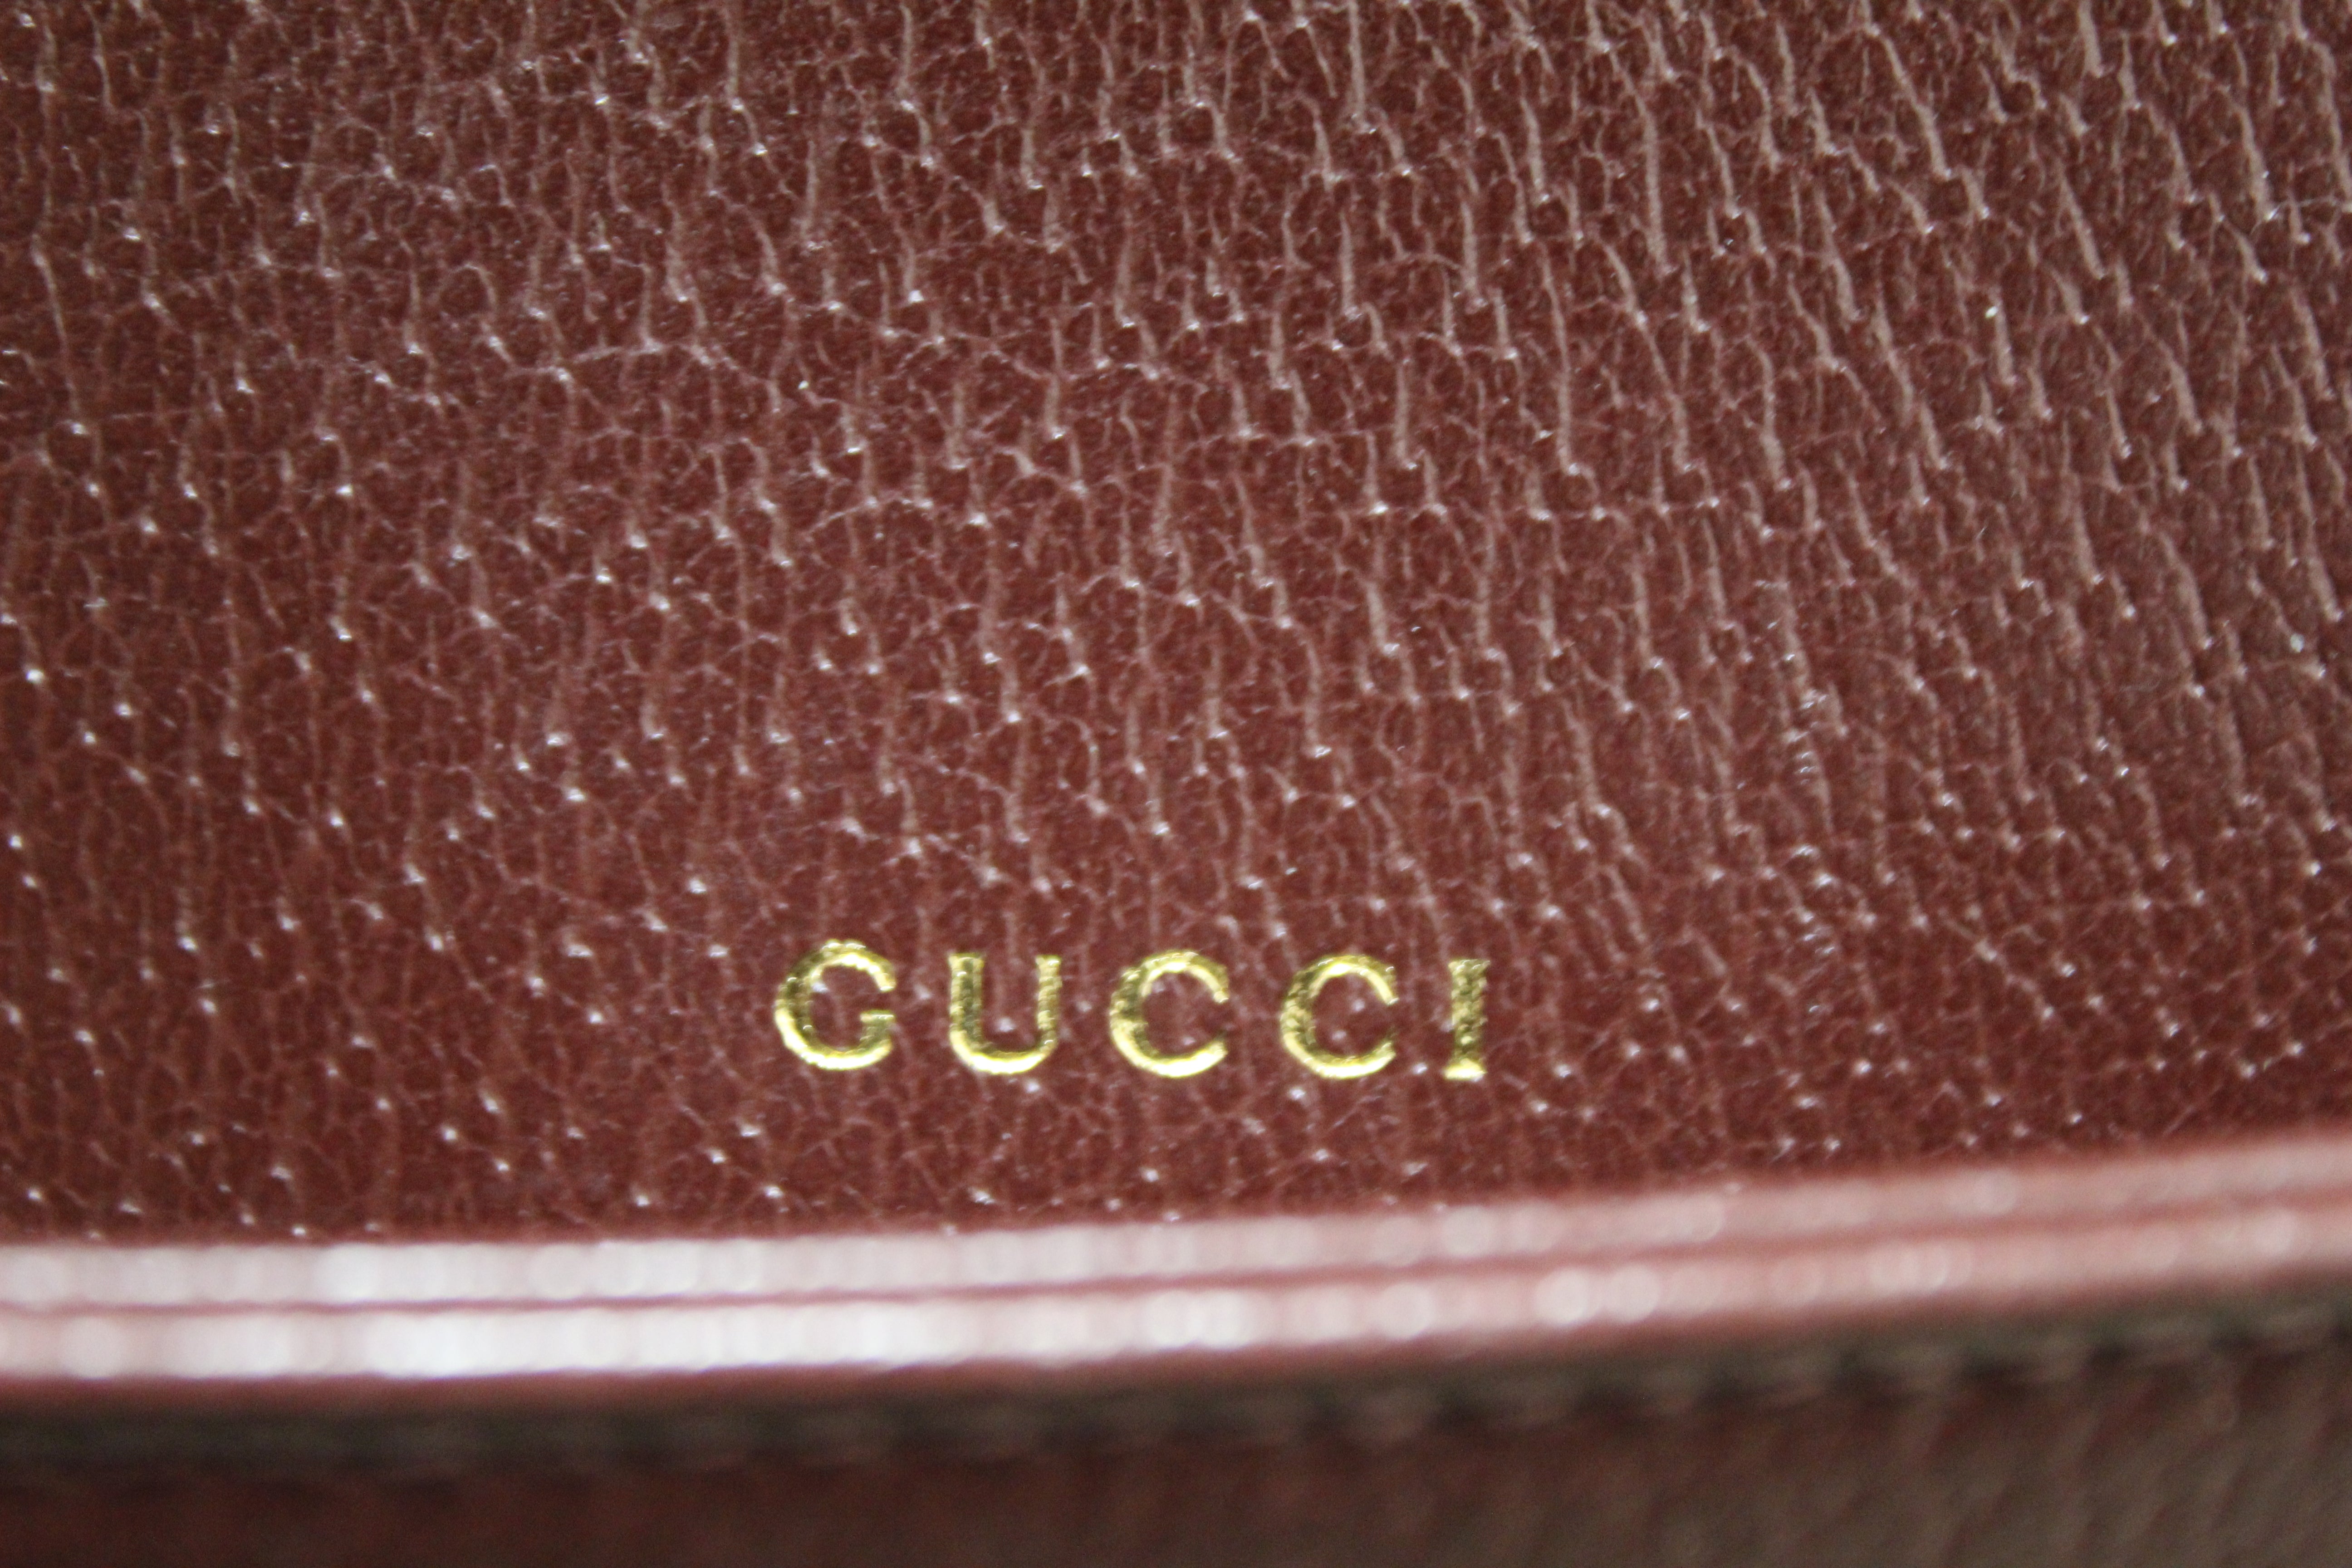 Gucci Horsebit 1955 small shoulder bag - BrandFav